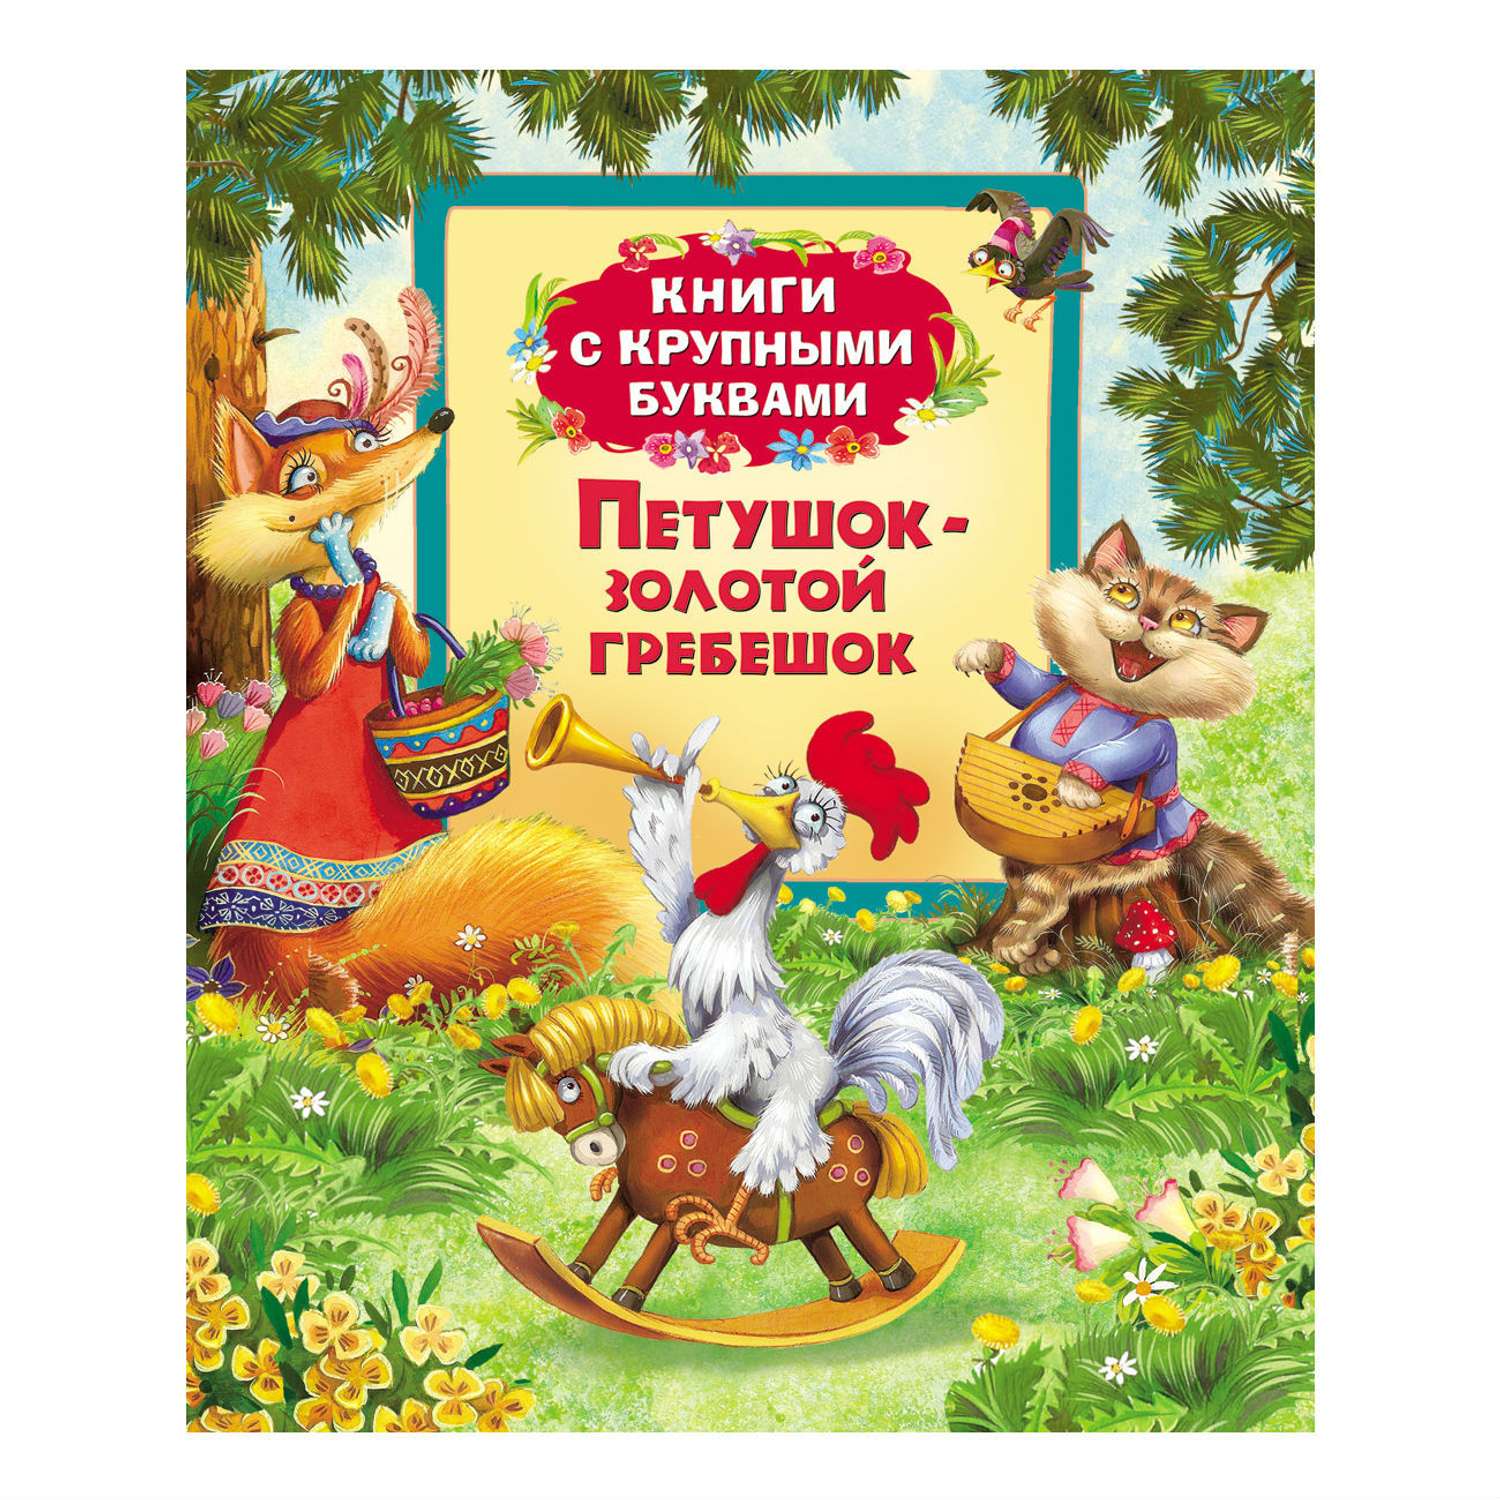 Сказка Росмэн Петушок-золотой гребешок (Книги с крупны - фото 1